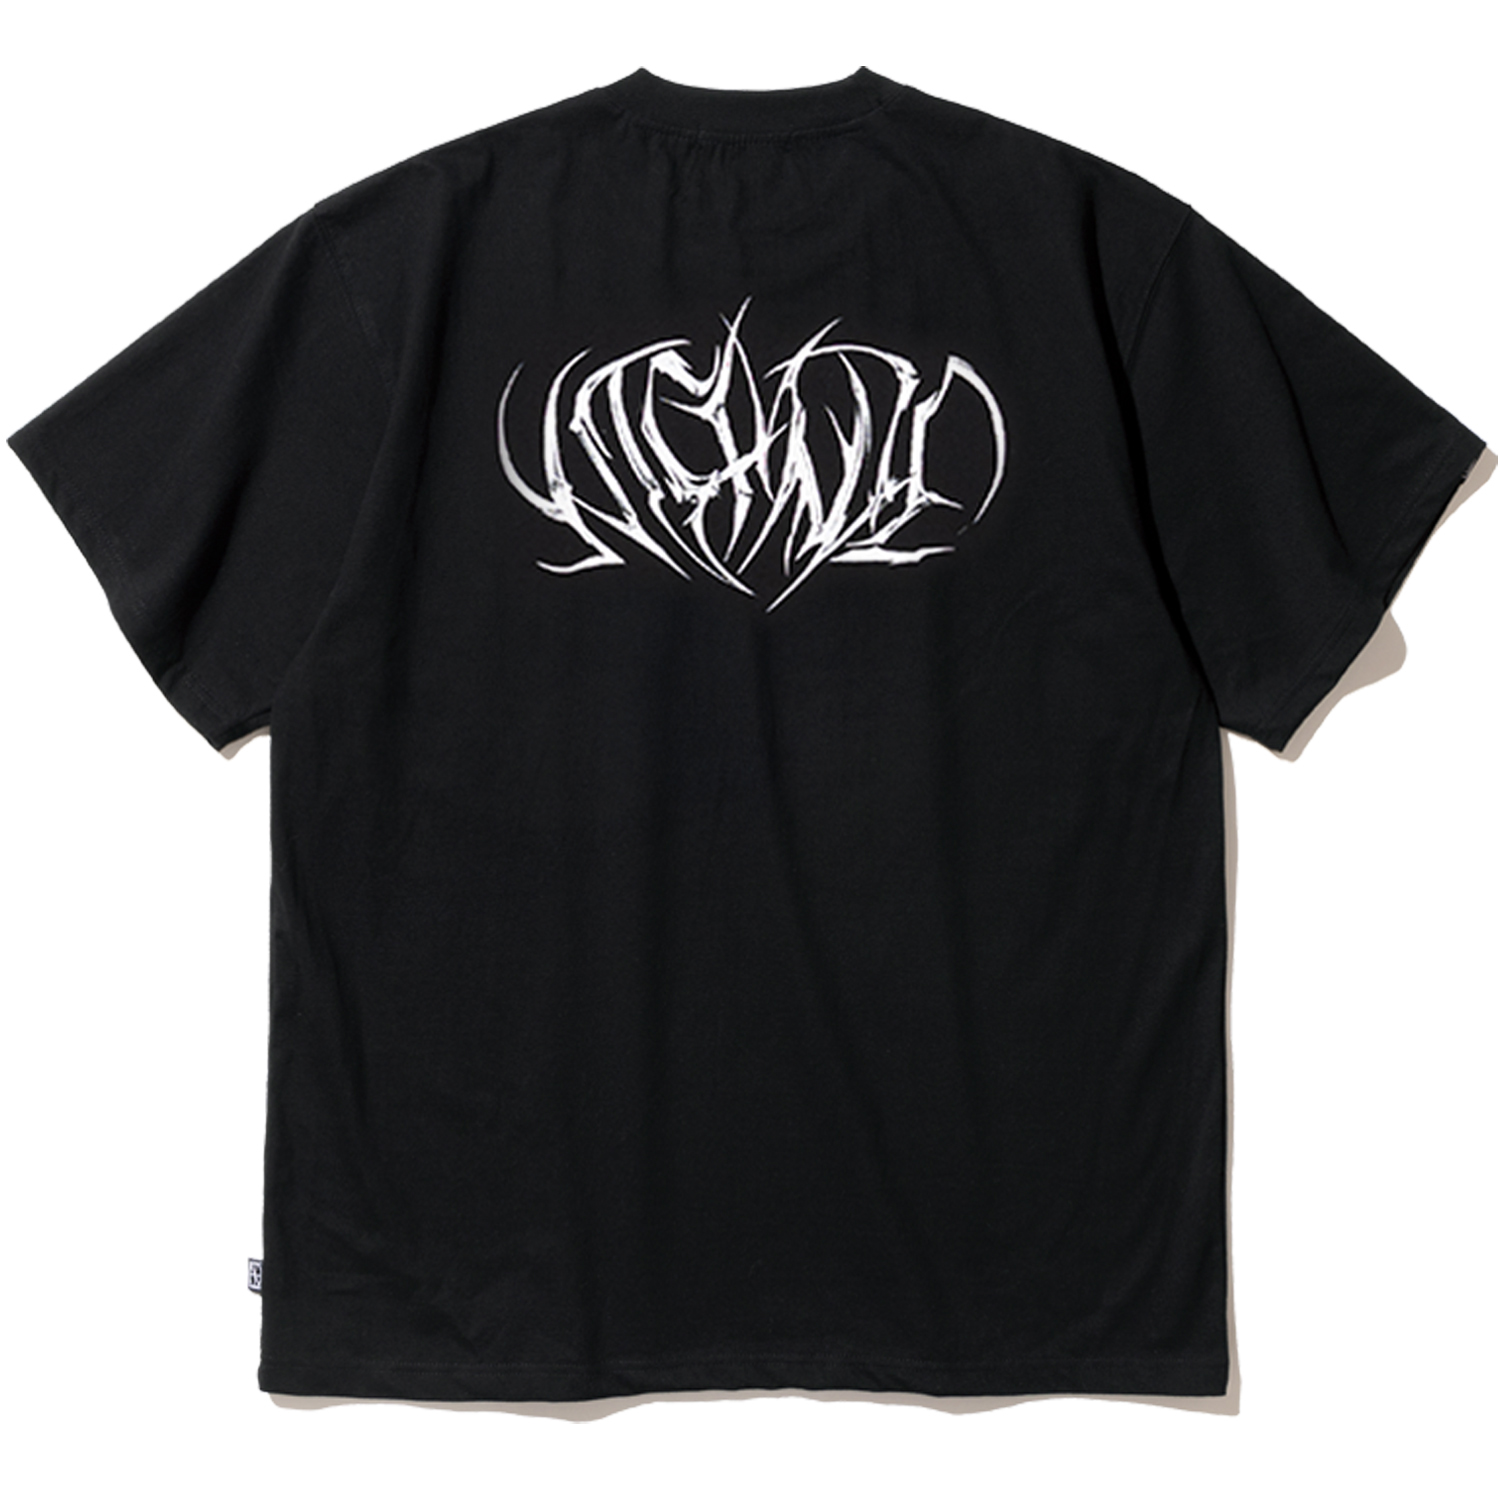 Metal N4ND Logo T-Shirts - Black,NOT4NERD